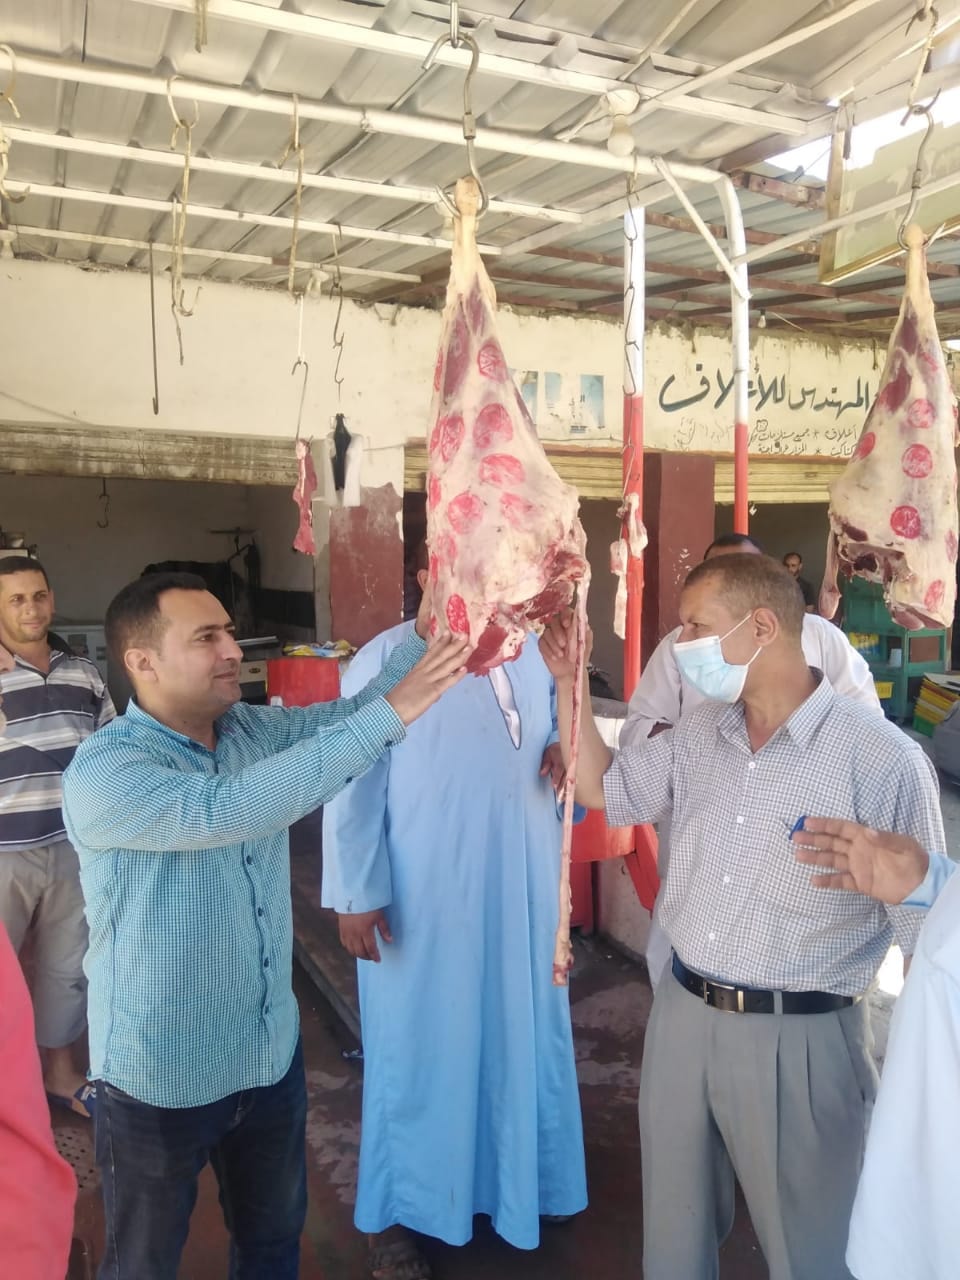 الكشف على اللحوم  بمحال الجزارة بكفر الشيخ